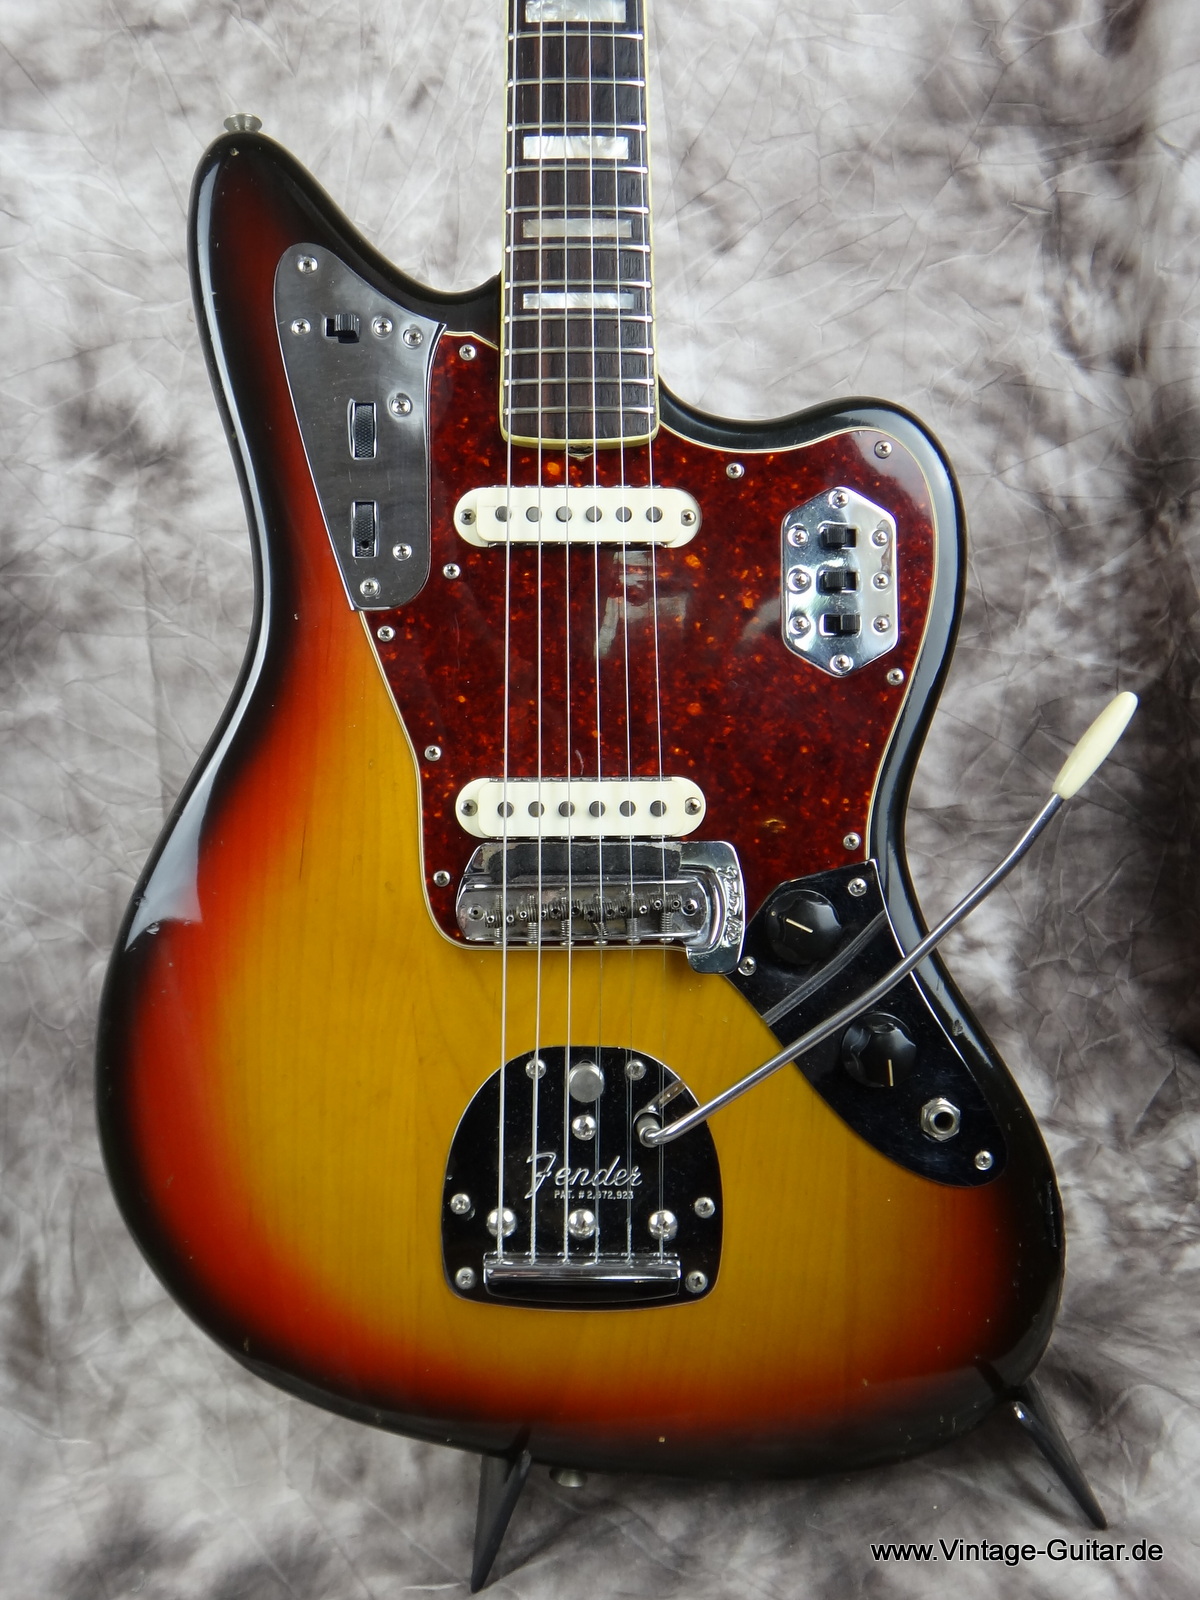 Fender_Jaguar-1973_sunburst-010.JPG